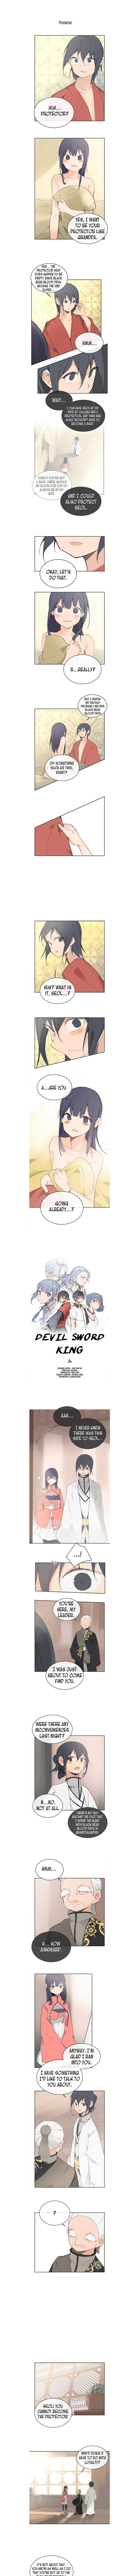 Devil Sword King 74 1